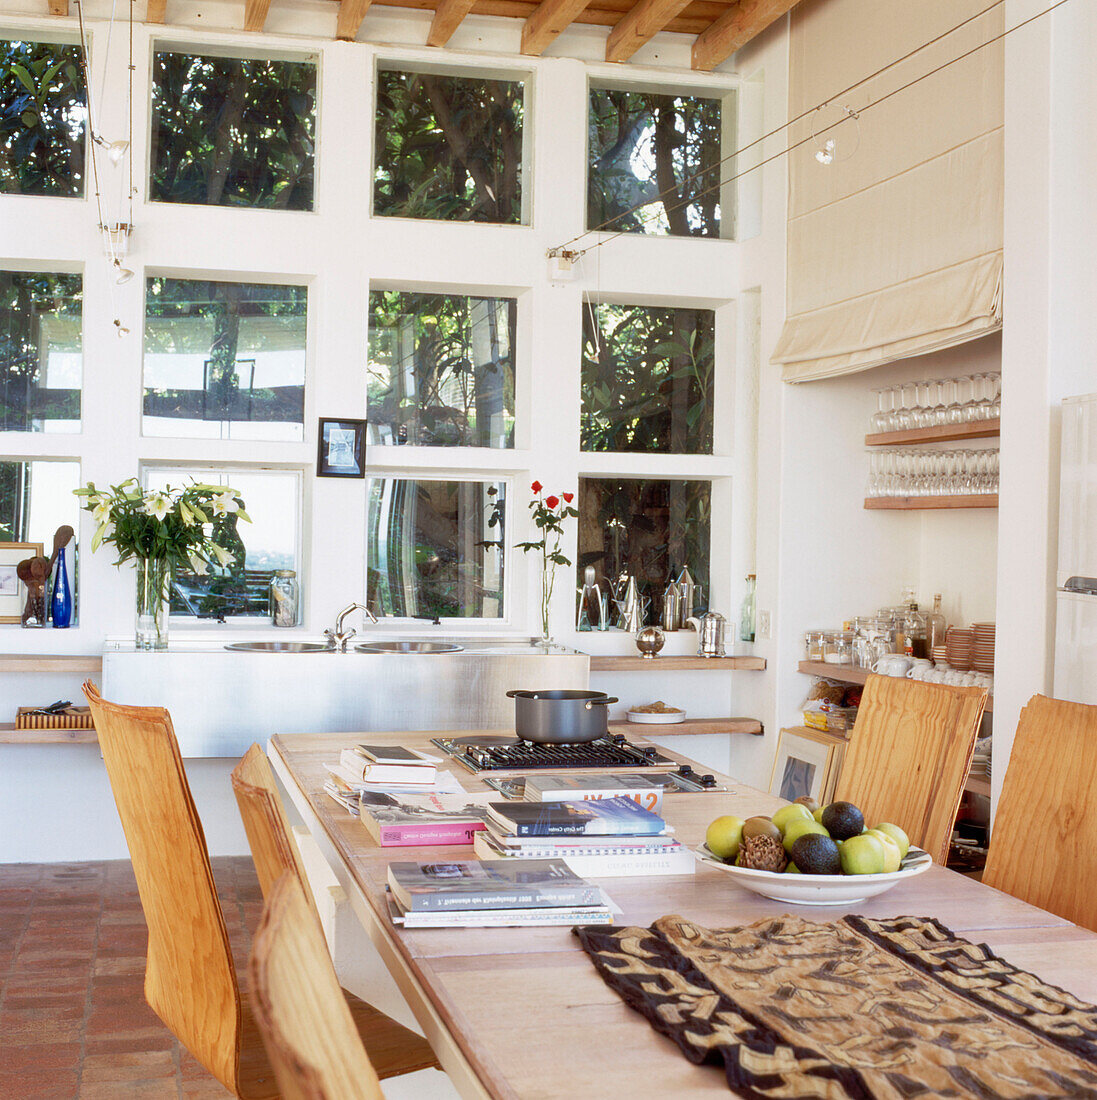 Holztisch und -stühle in einer Küche mit eingebautem Herd und doppelt hohem Fenster